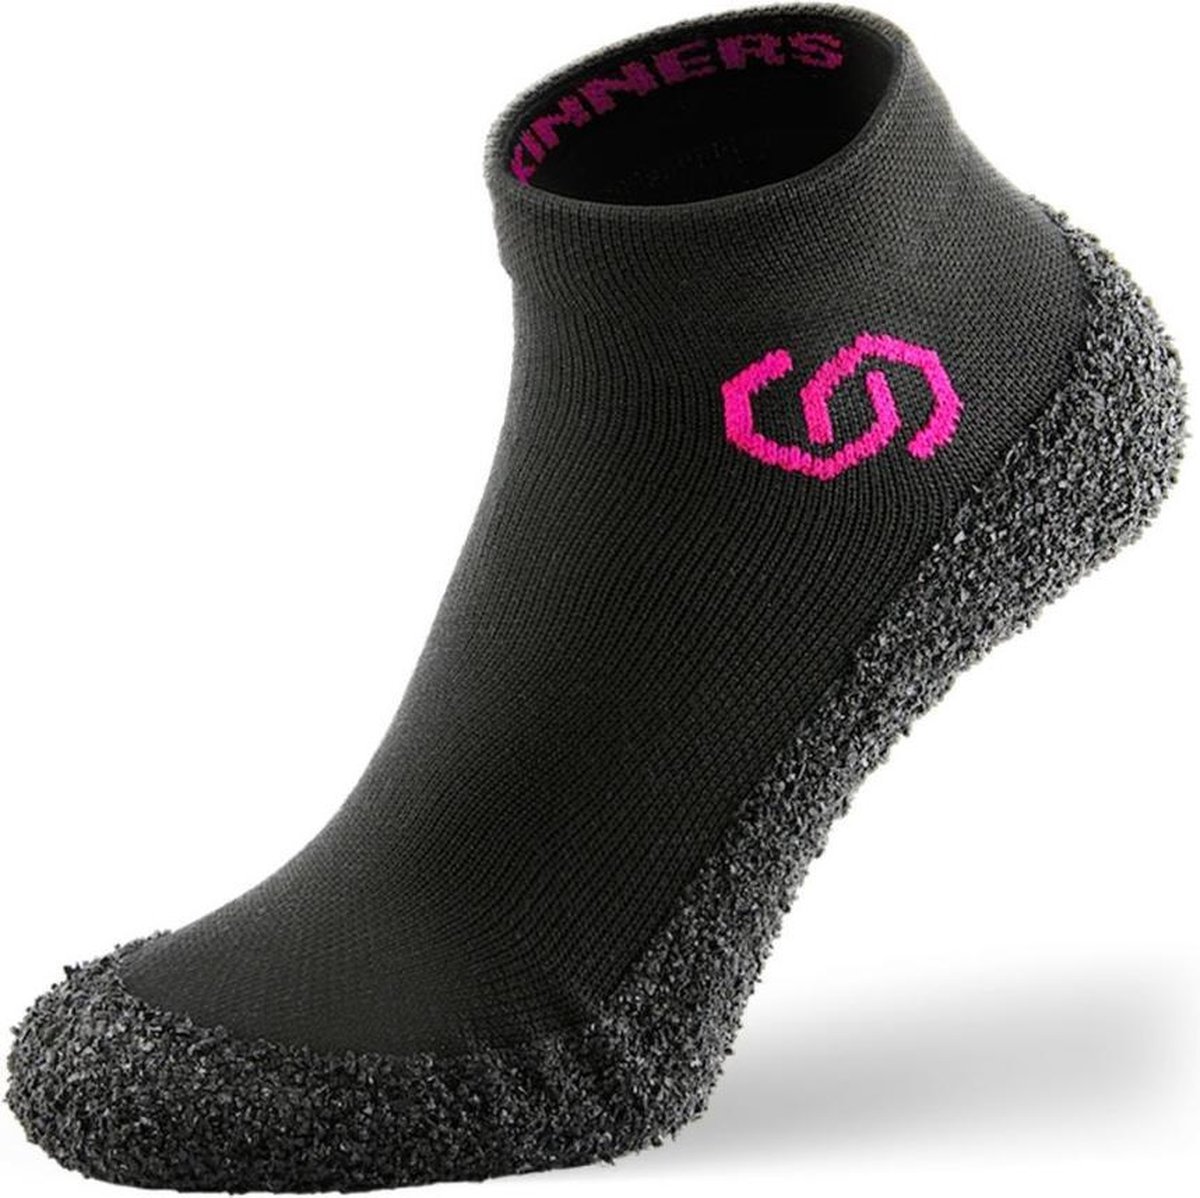 Skinners Barefoot sokschoenen - compact en lichtgewicht - Pink - XS